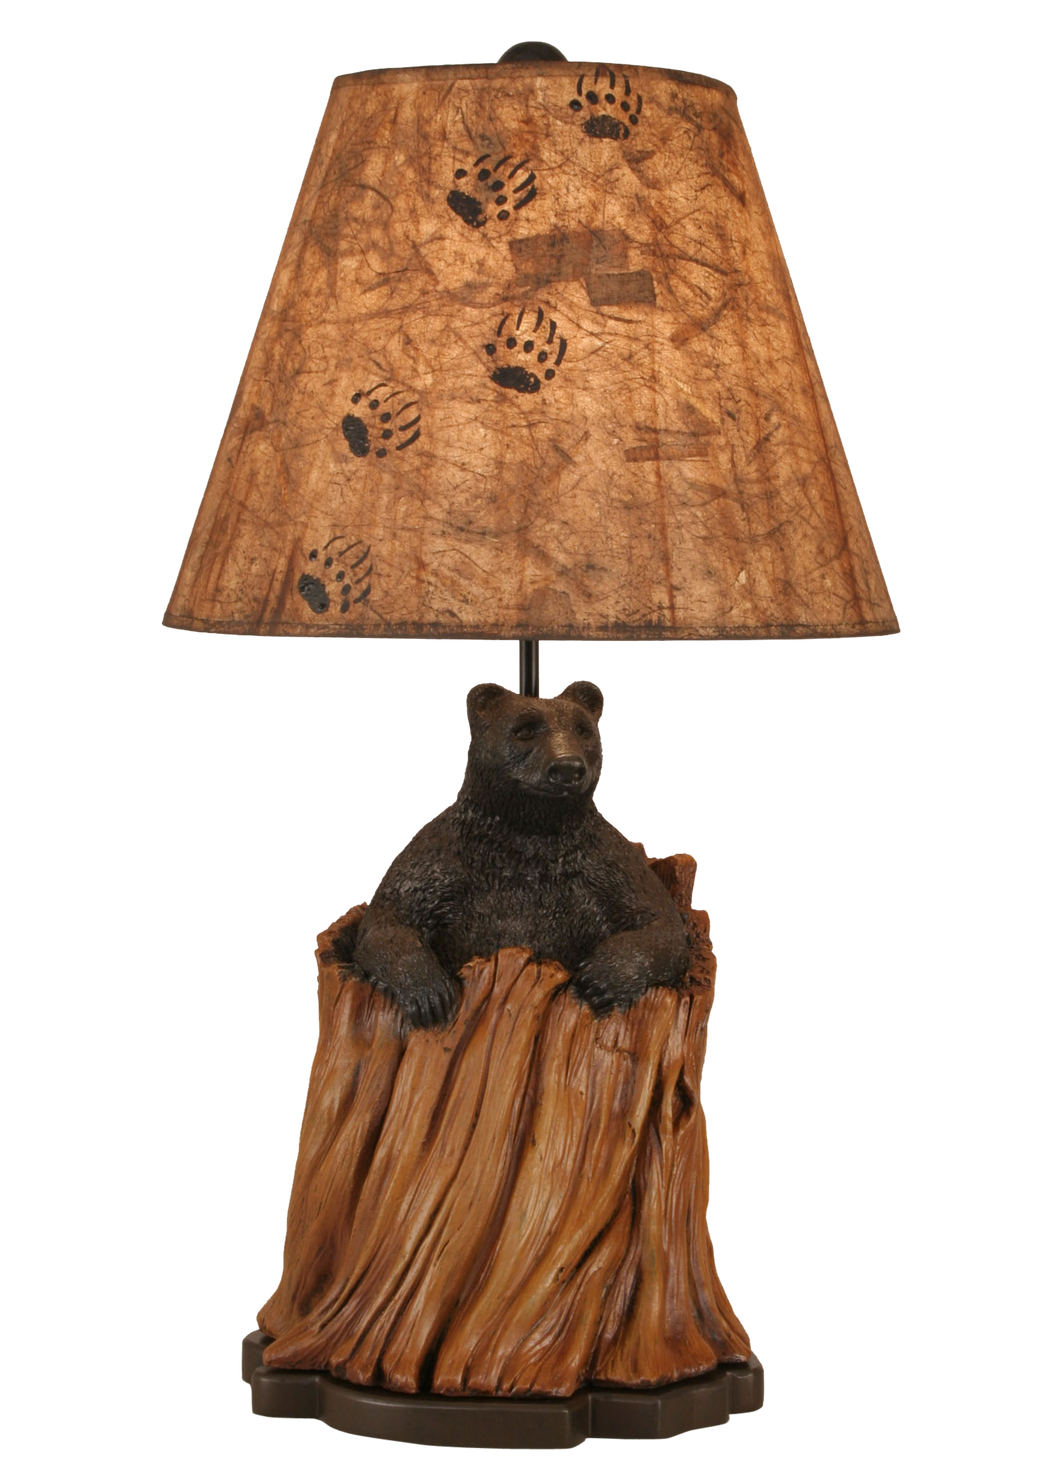 Kodiak/Honey Bear in Stump Table Lamp